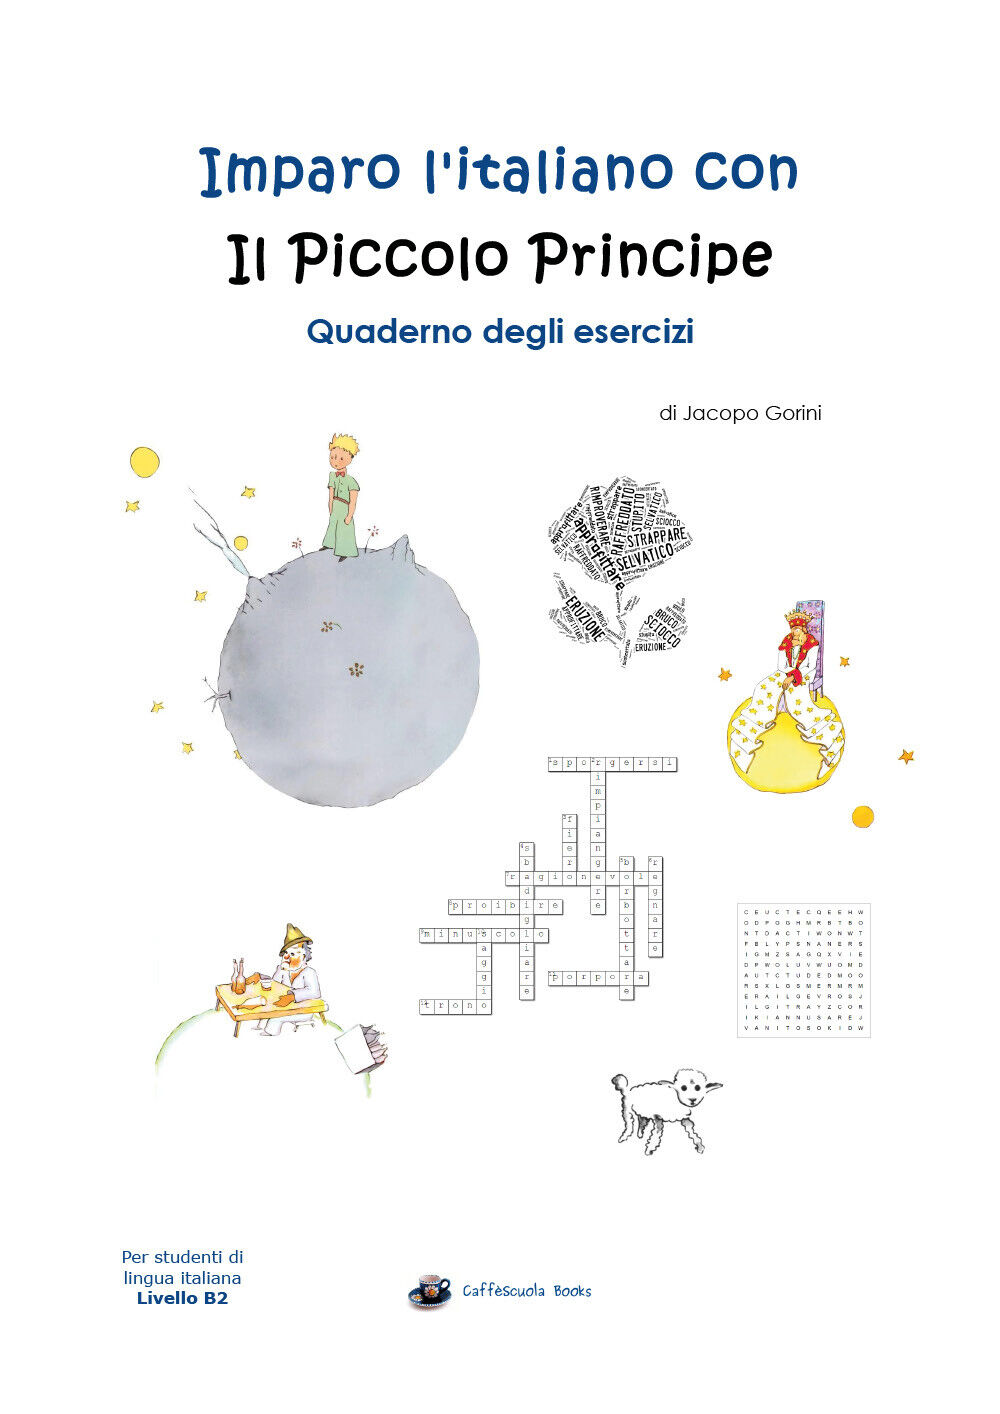 Imparo l'italiano con il Piccolo Principe: Quaderno degli esercizi-J. Gorini - P libro usato